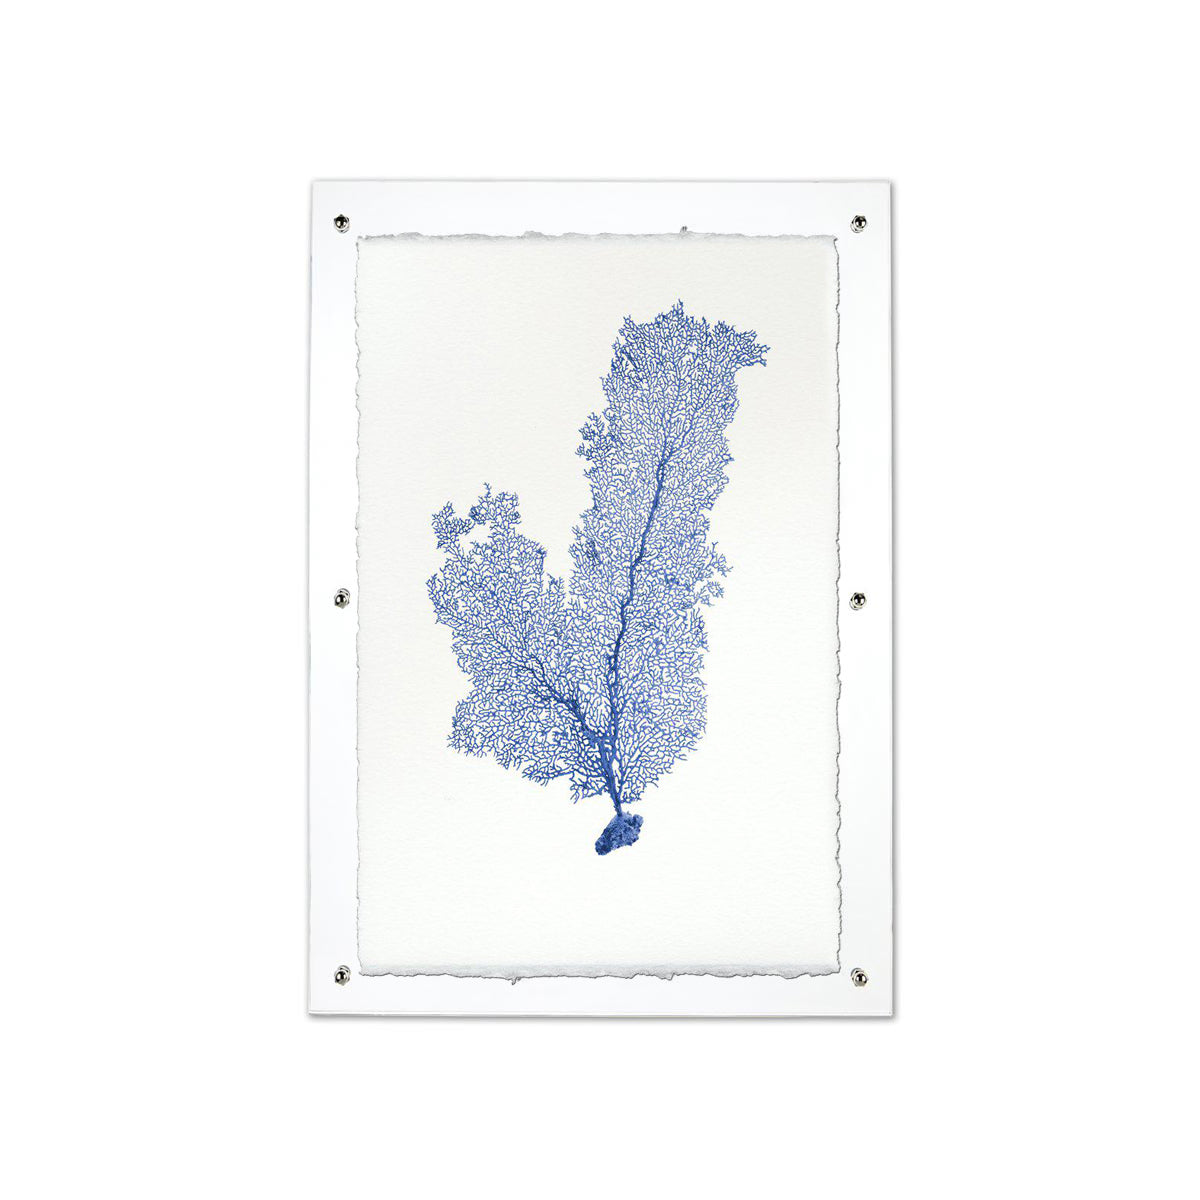 Tall sea fan blue framed handmade paper wall art print 20"x30"